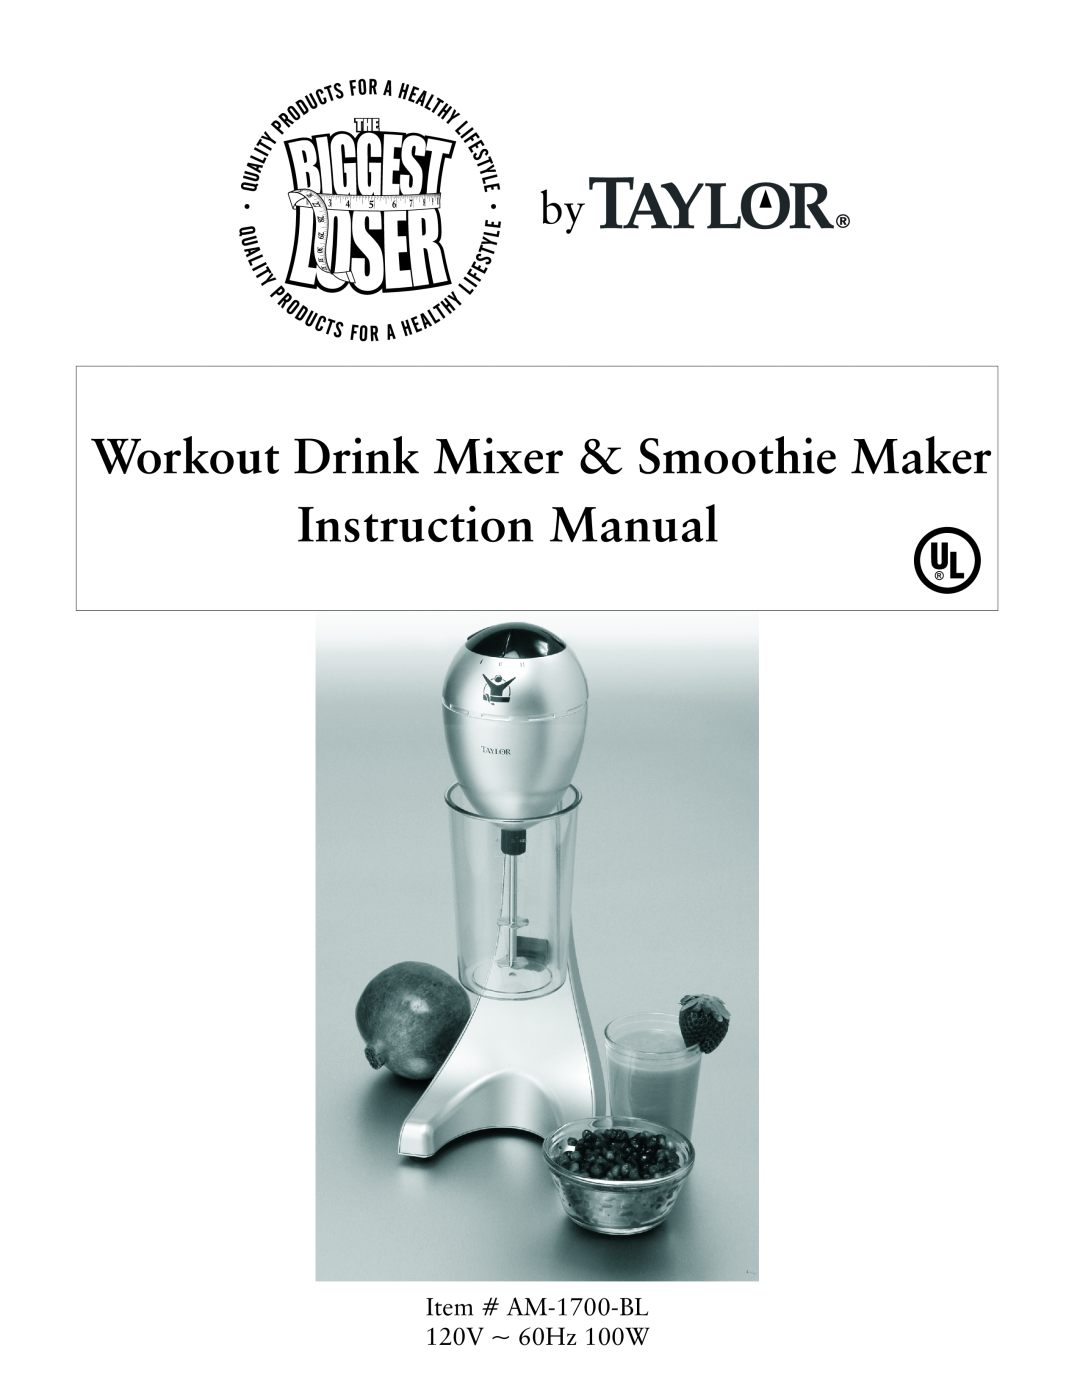 Taylor instruction manual Workout Drink Mixer & Smoothie Maker, Item # AM-1700-BL 120V ~ 60Hz 100W 